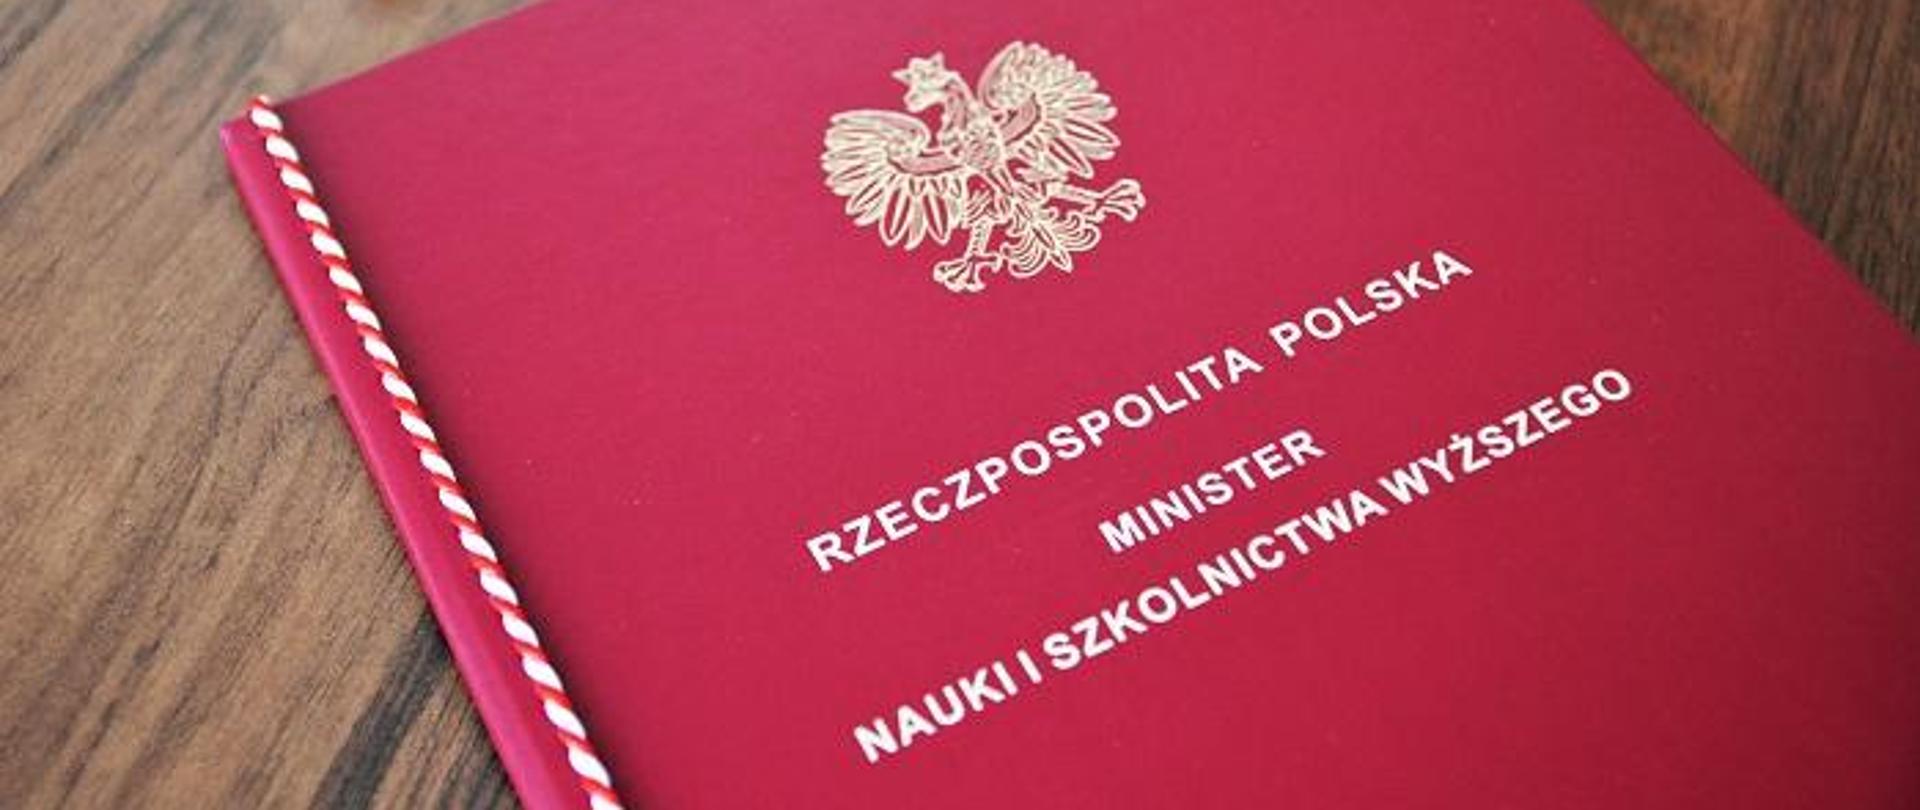 Na drewnianym blacie lezy czerwona teczka z napisem Rzeczpospolita polska - minister nauki i szkolnictwa wyższego